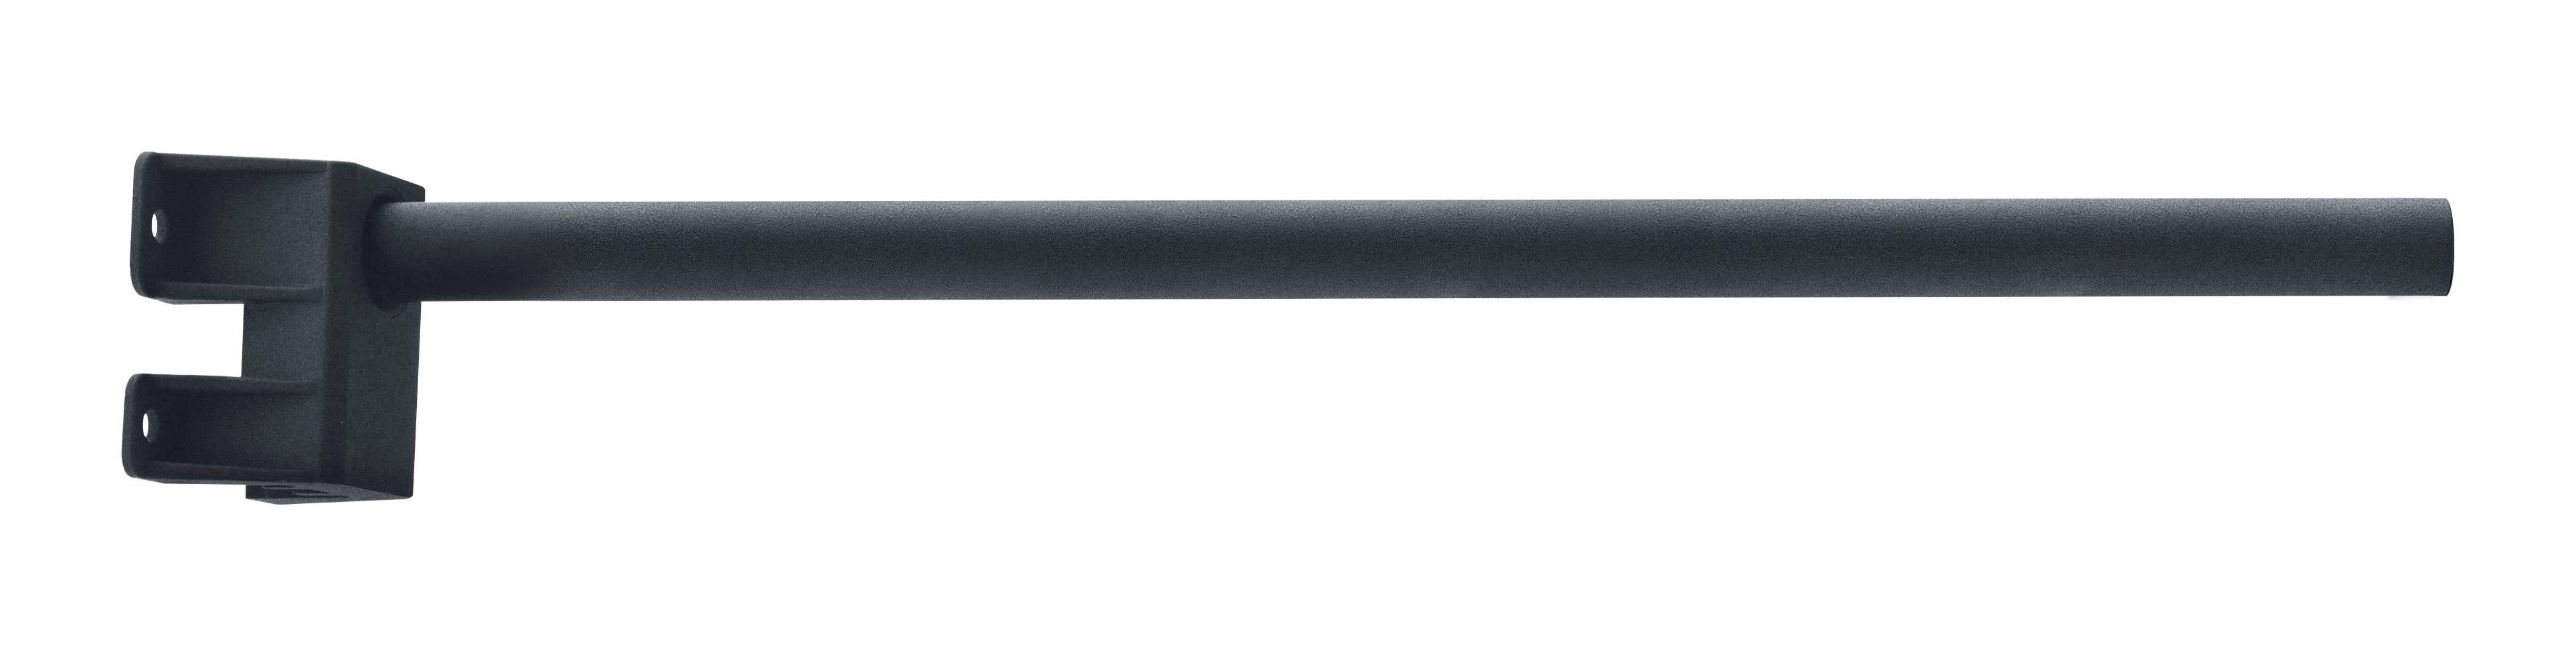 Aric - Tige de fixation FA 57 pour projecteurs, couleur : noir